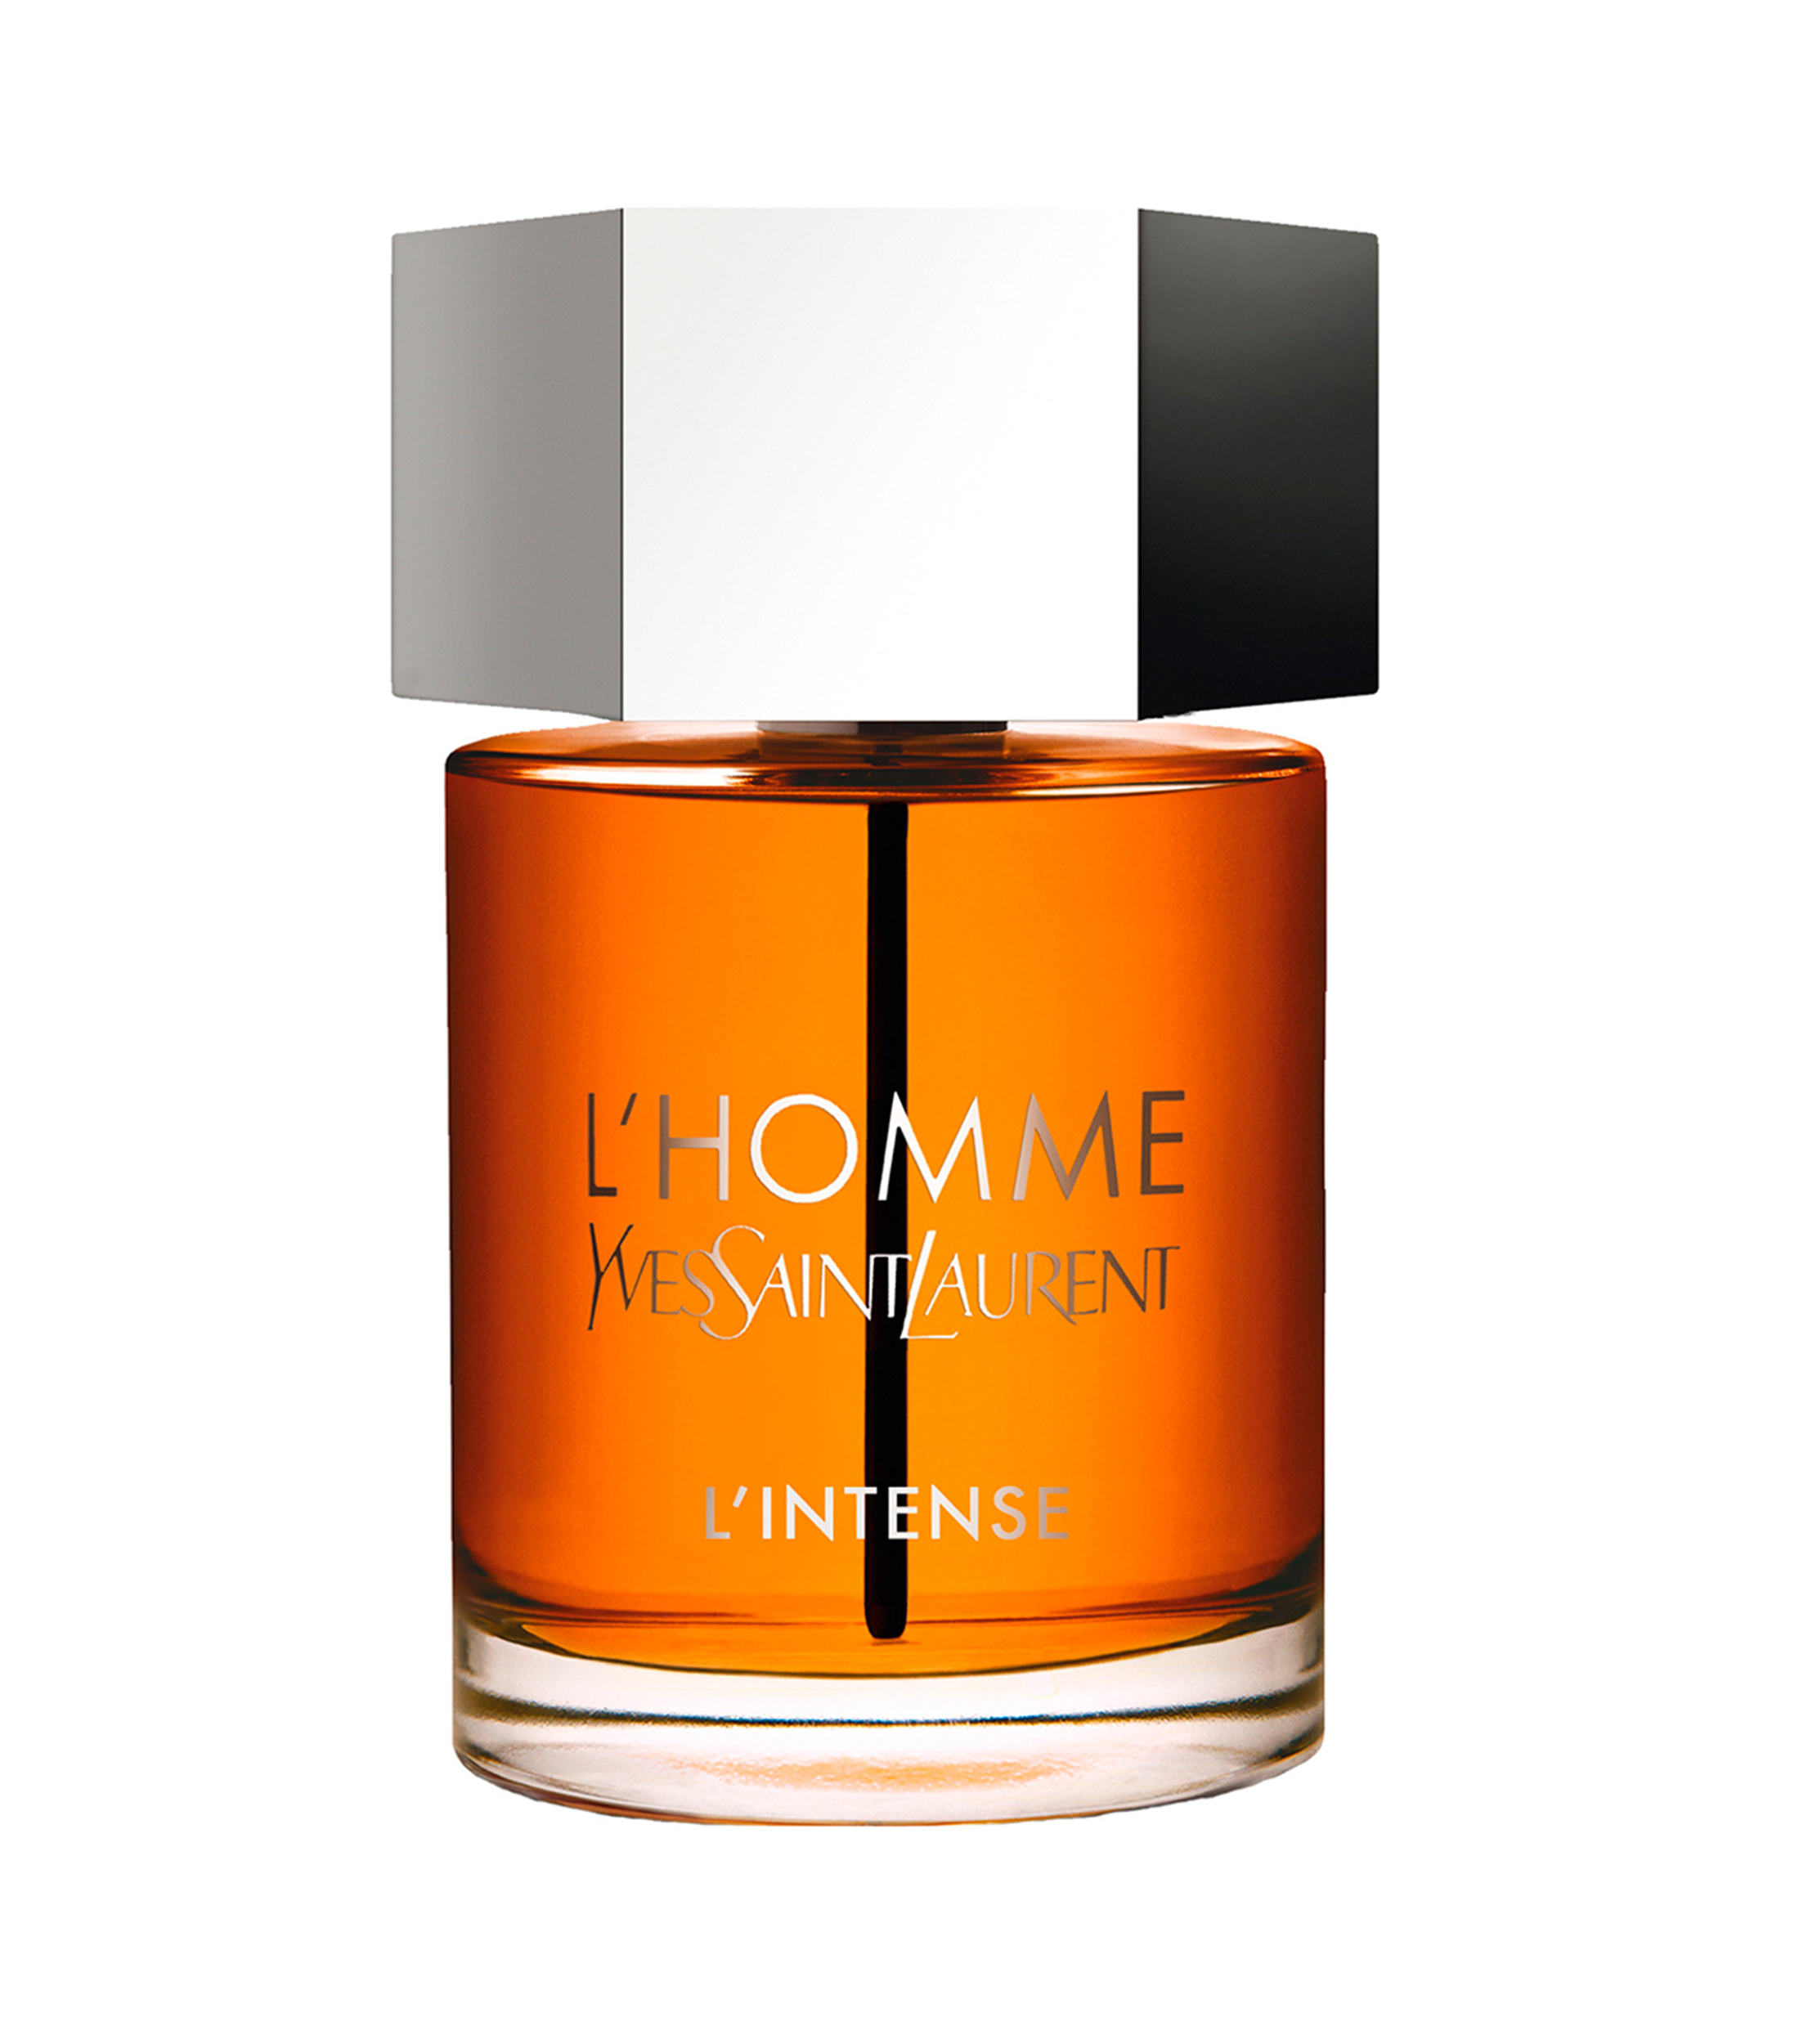 Yves Saint Laurent Perfume, L'Homme Intense Eau de Parfum, 100 ml